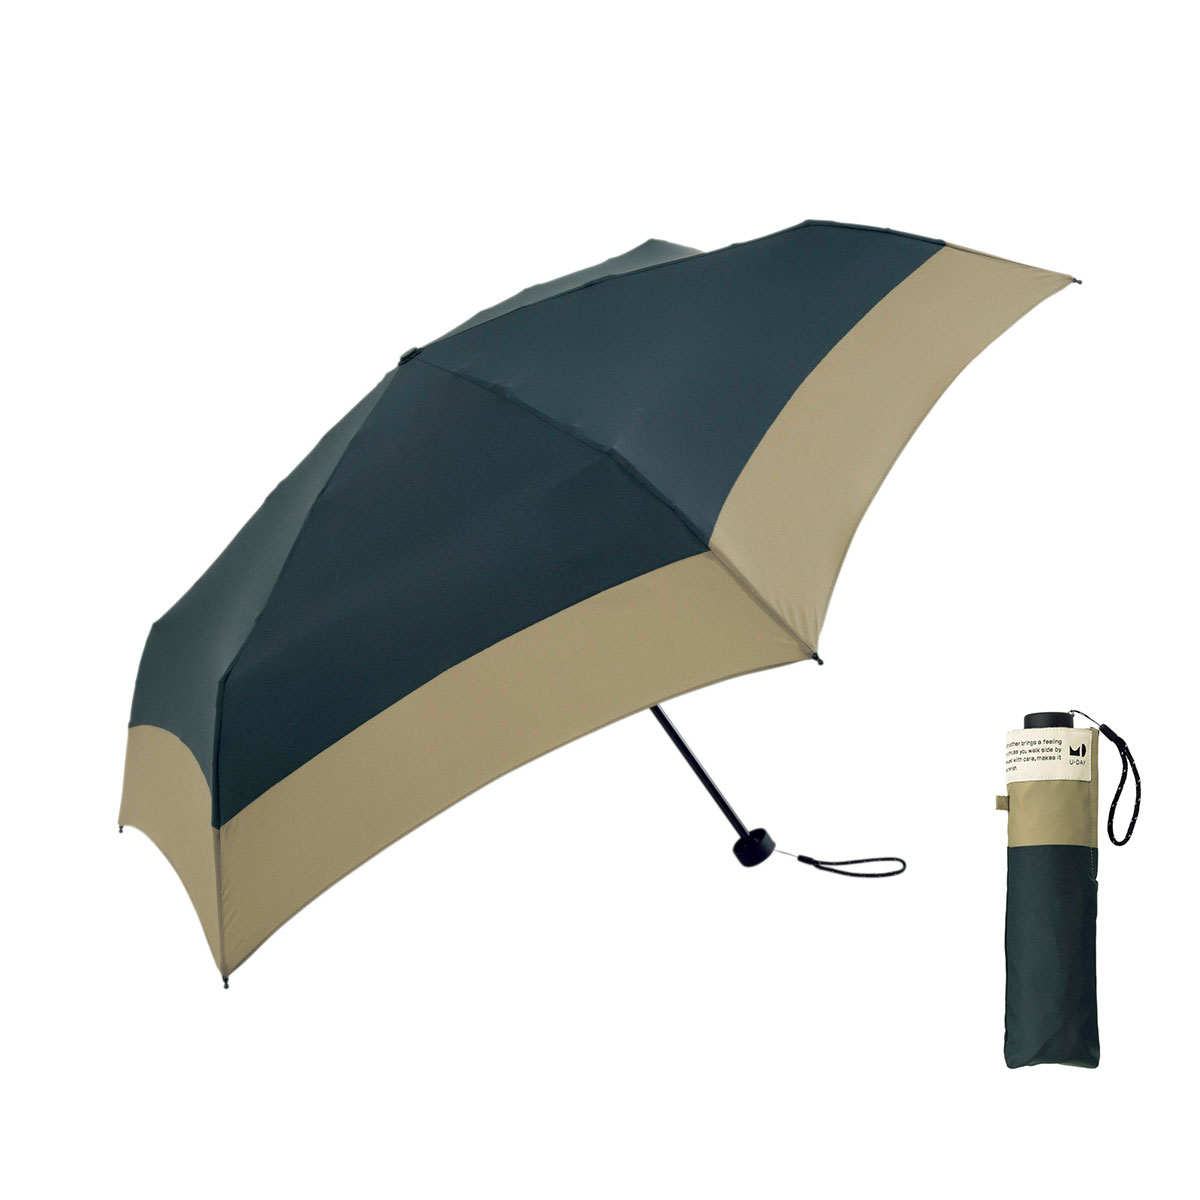 U-DAY 折りたたみ傘 傘 軽量 軽い 晴雨兼用 メンズ レディース 雨傘 日傘 ユーデイ ブラン...